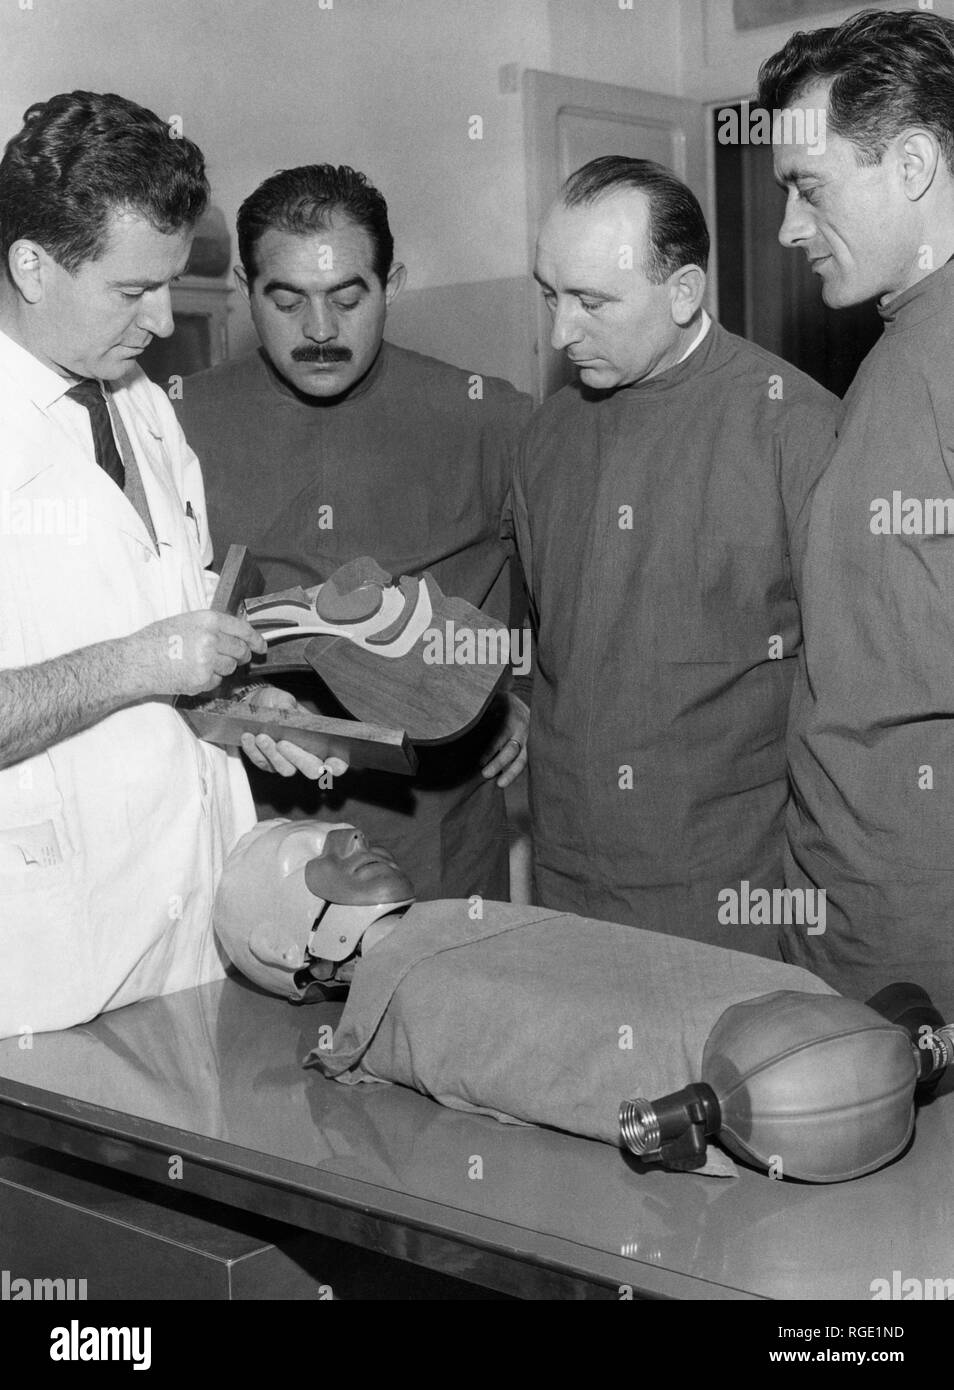 Agents de la circulation, cours de premiers soins, Italie 1964 Banque D'Images